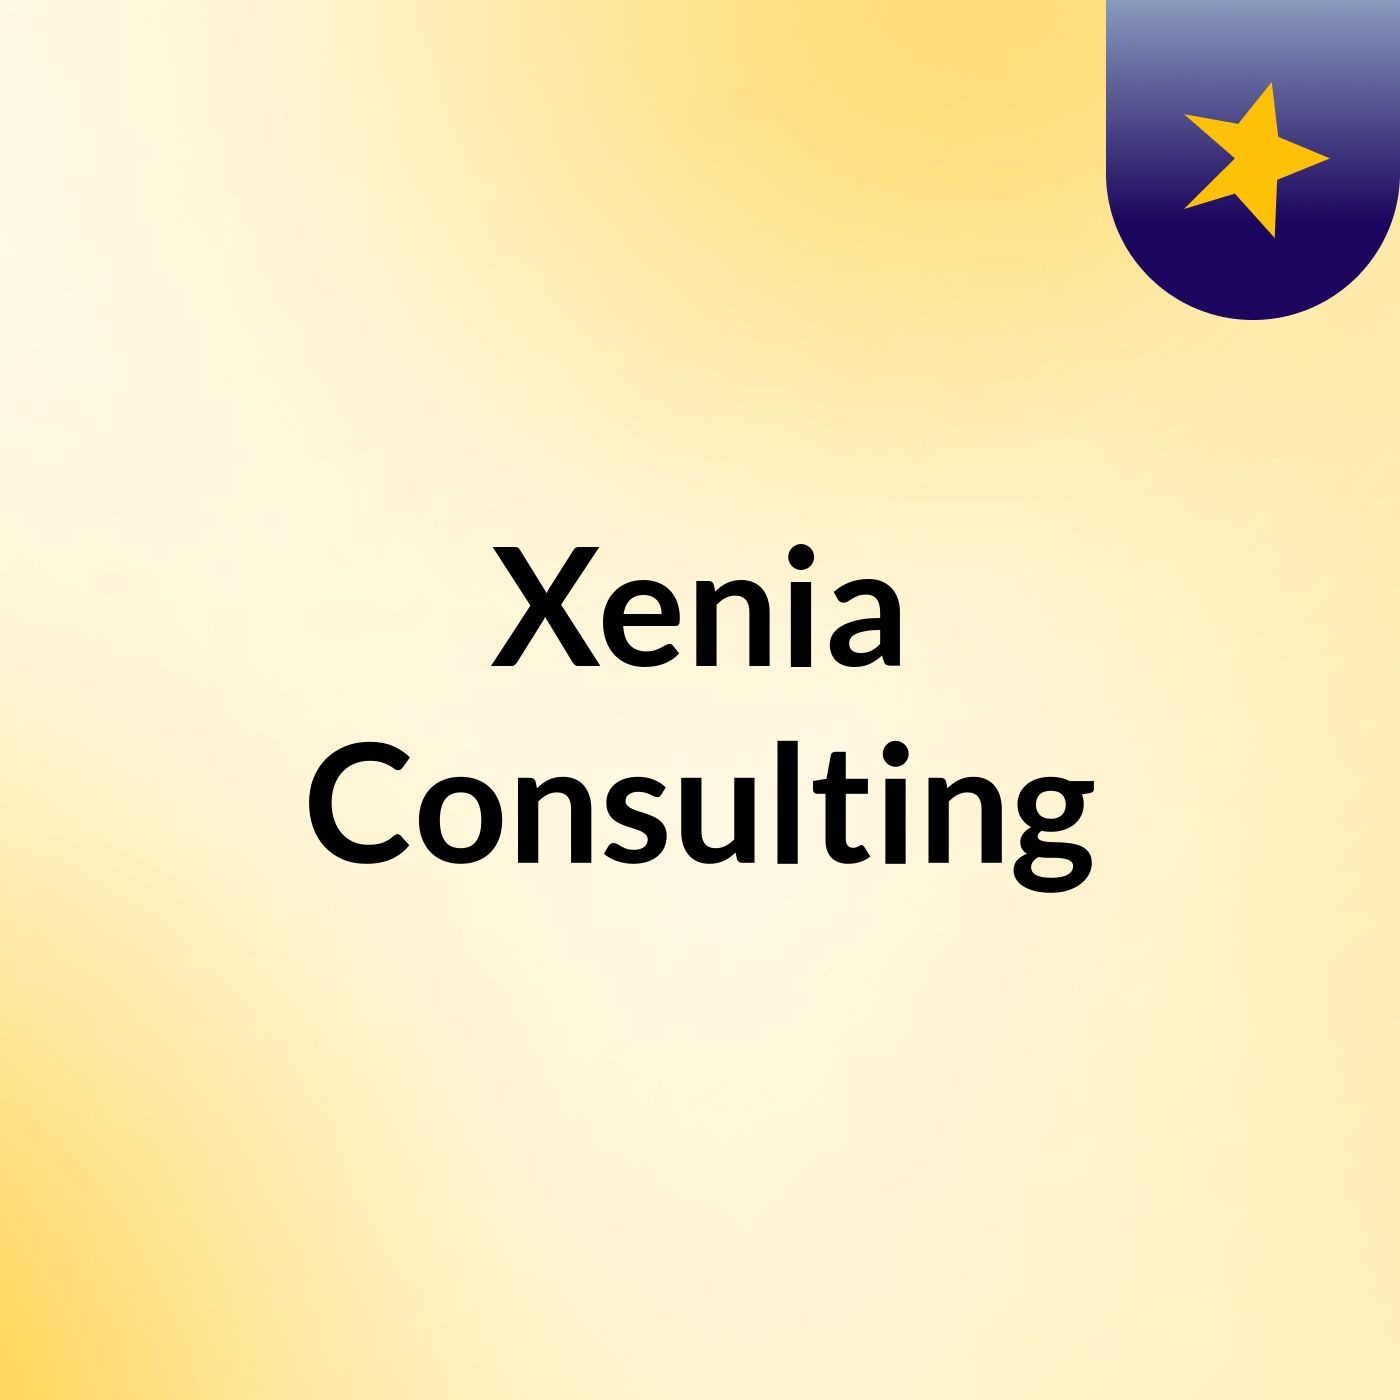 Xenia Consulting